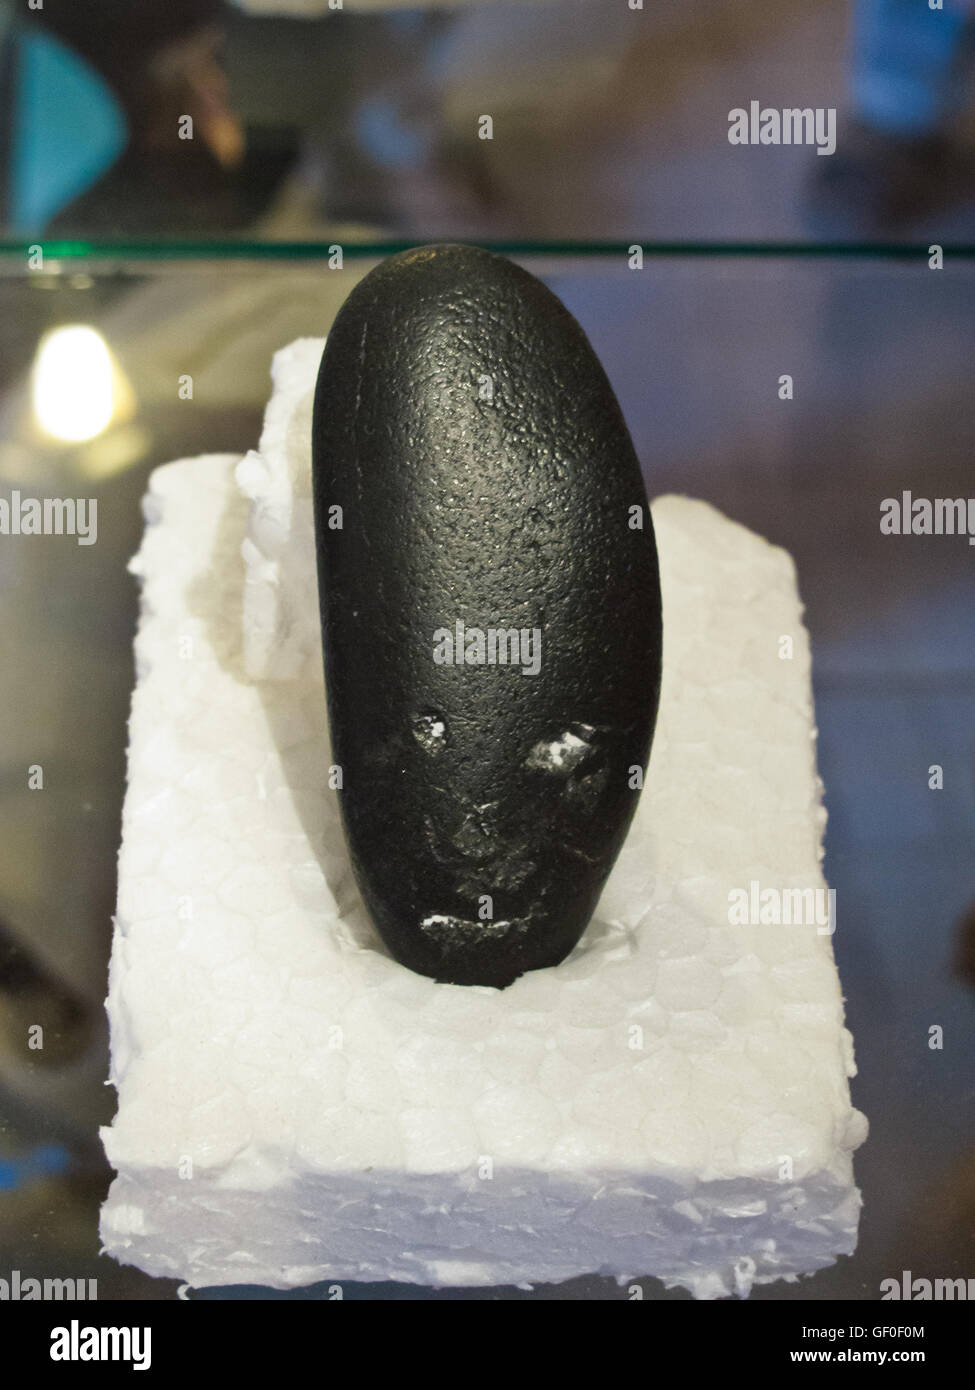 La piedra mostrando la alargada cabeza humana pueden ser encontrados en el museo de historia de Paracas Foto de stock